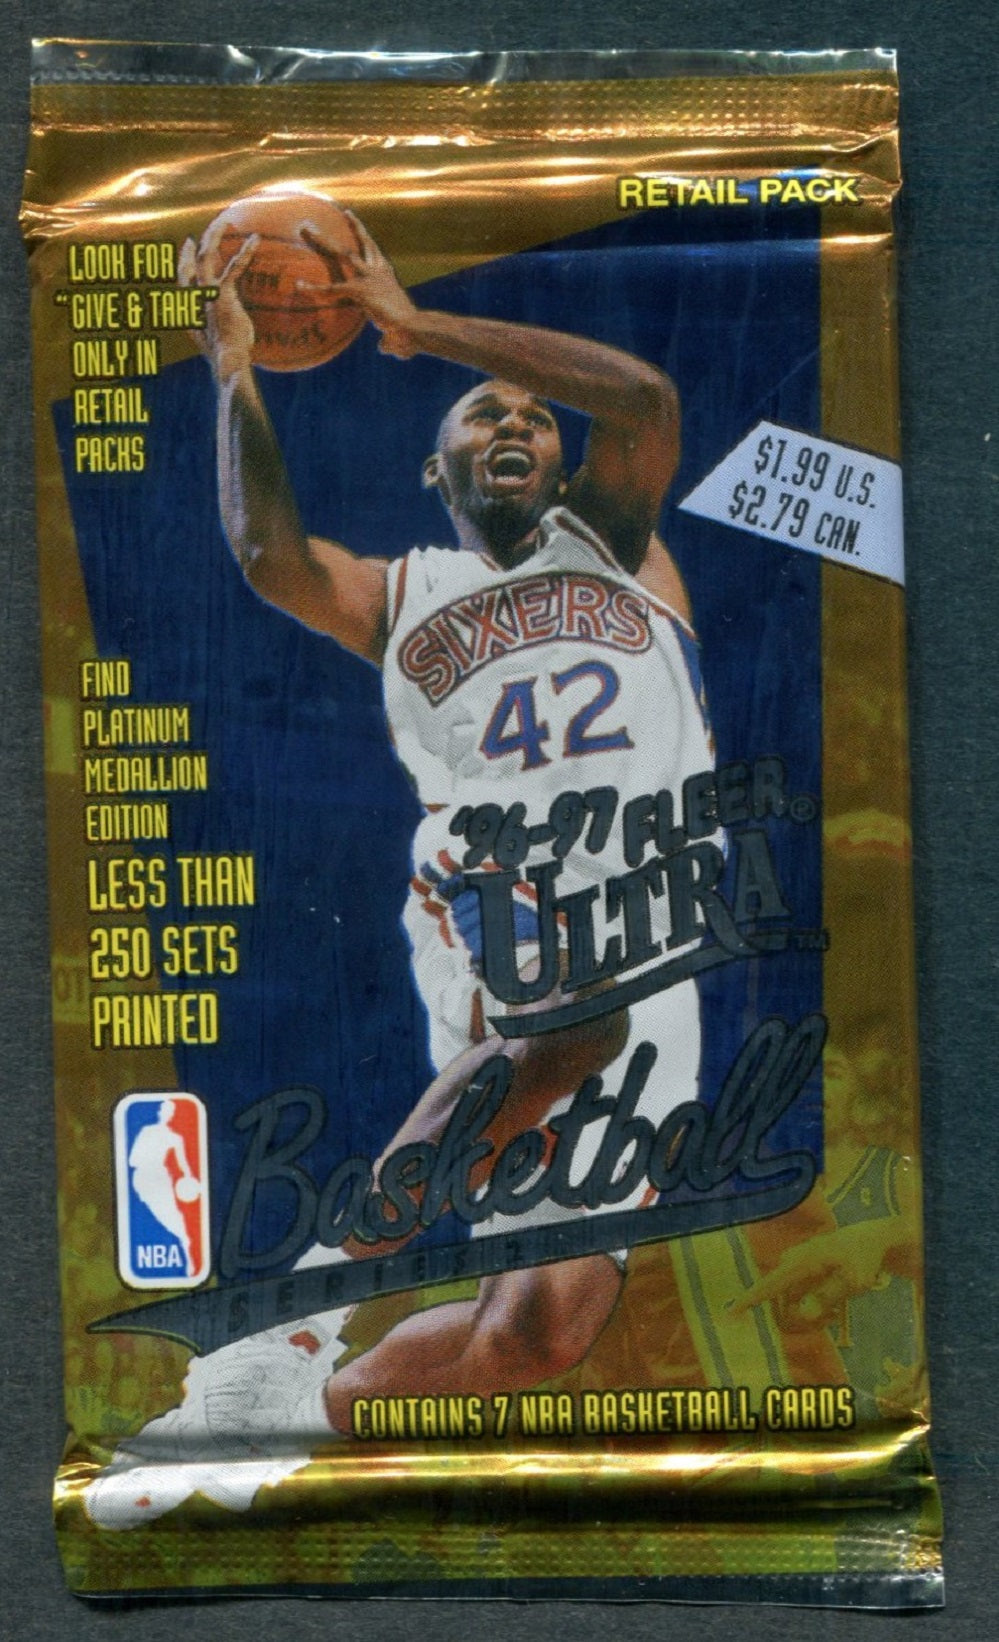 1996/97 Fleer Ultra Basketball Series 2 Unopened Pack (Retail) (Pre-Priced)